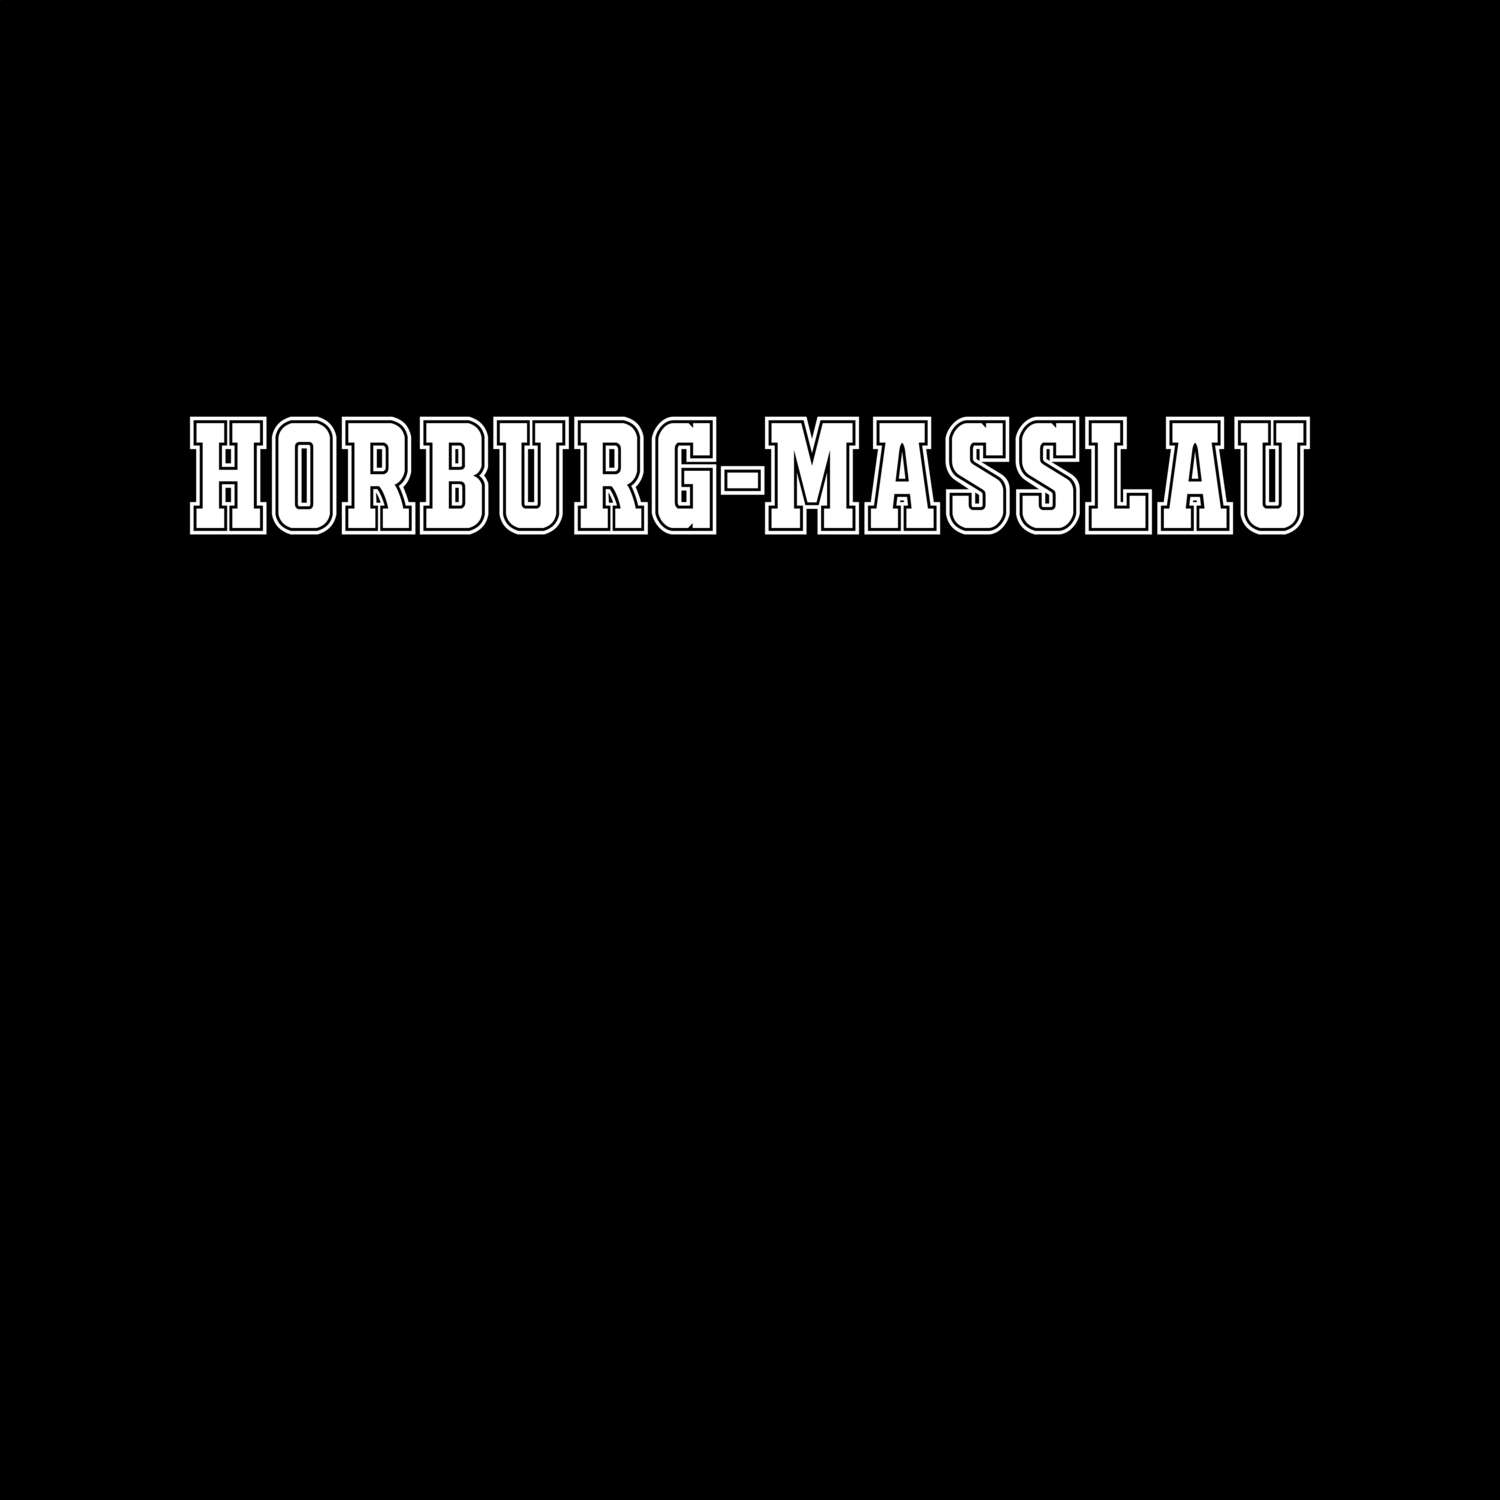 Horburg-Maßlau T-Shirt »Classic«